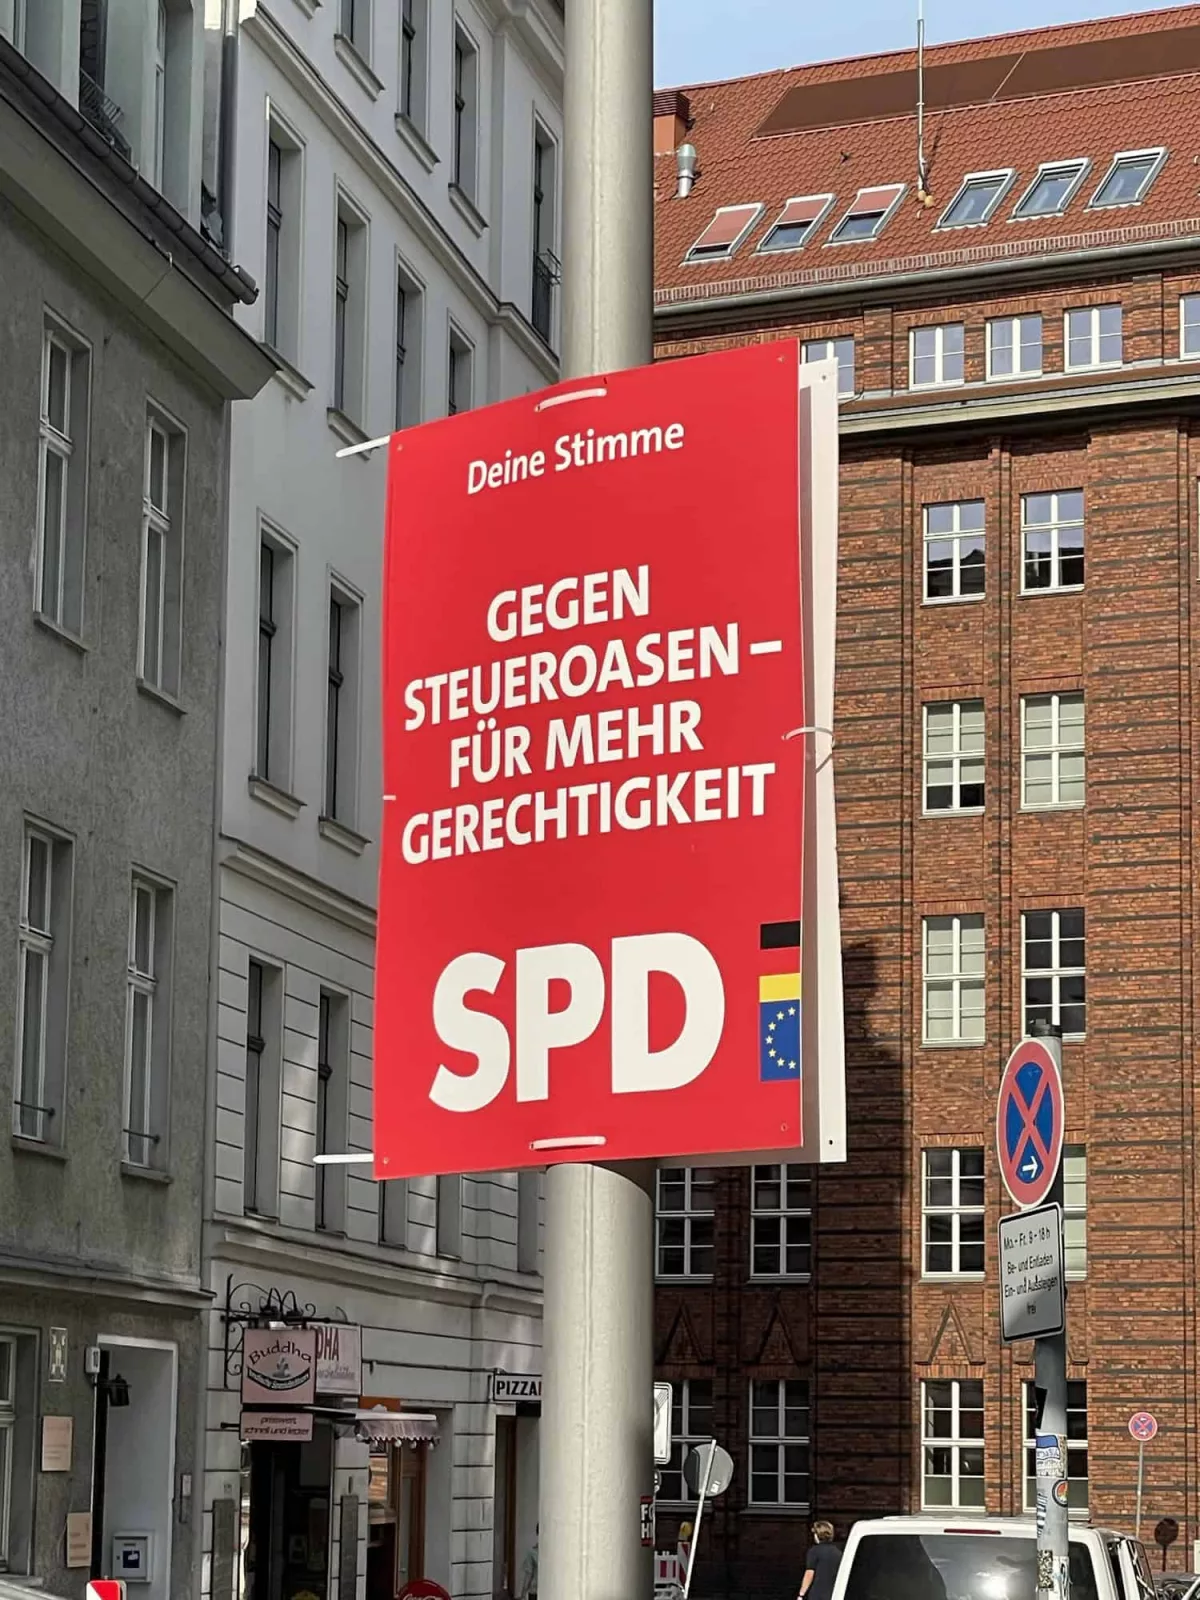 Straße in Berlin mit Laterne und dort SPD-Wahlplakat mit Sloagen: Deine Stimme GEGEN STEUEROASEN - FÜR MEHR GERECHTIGKEIT.